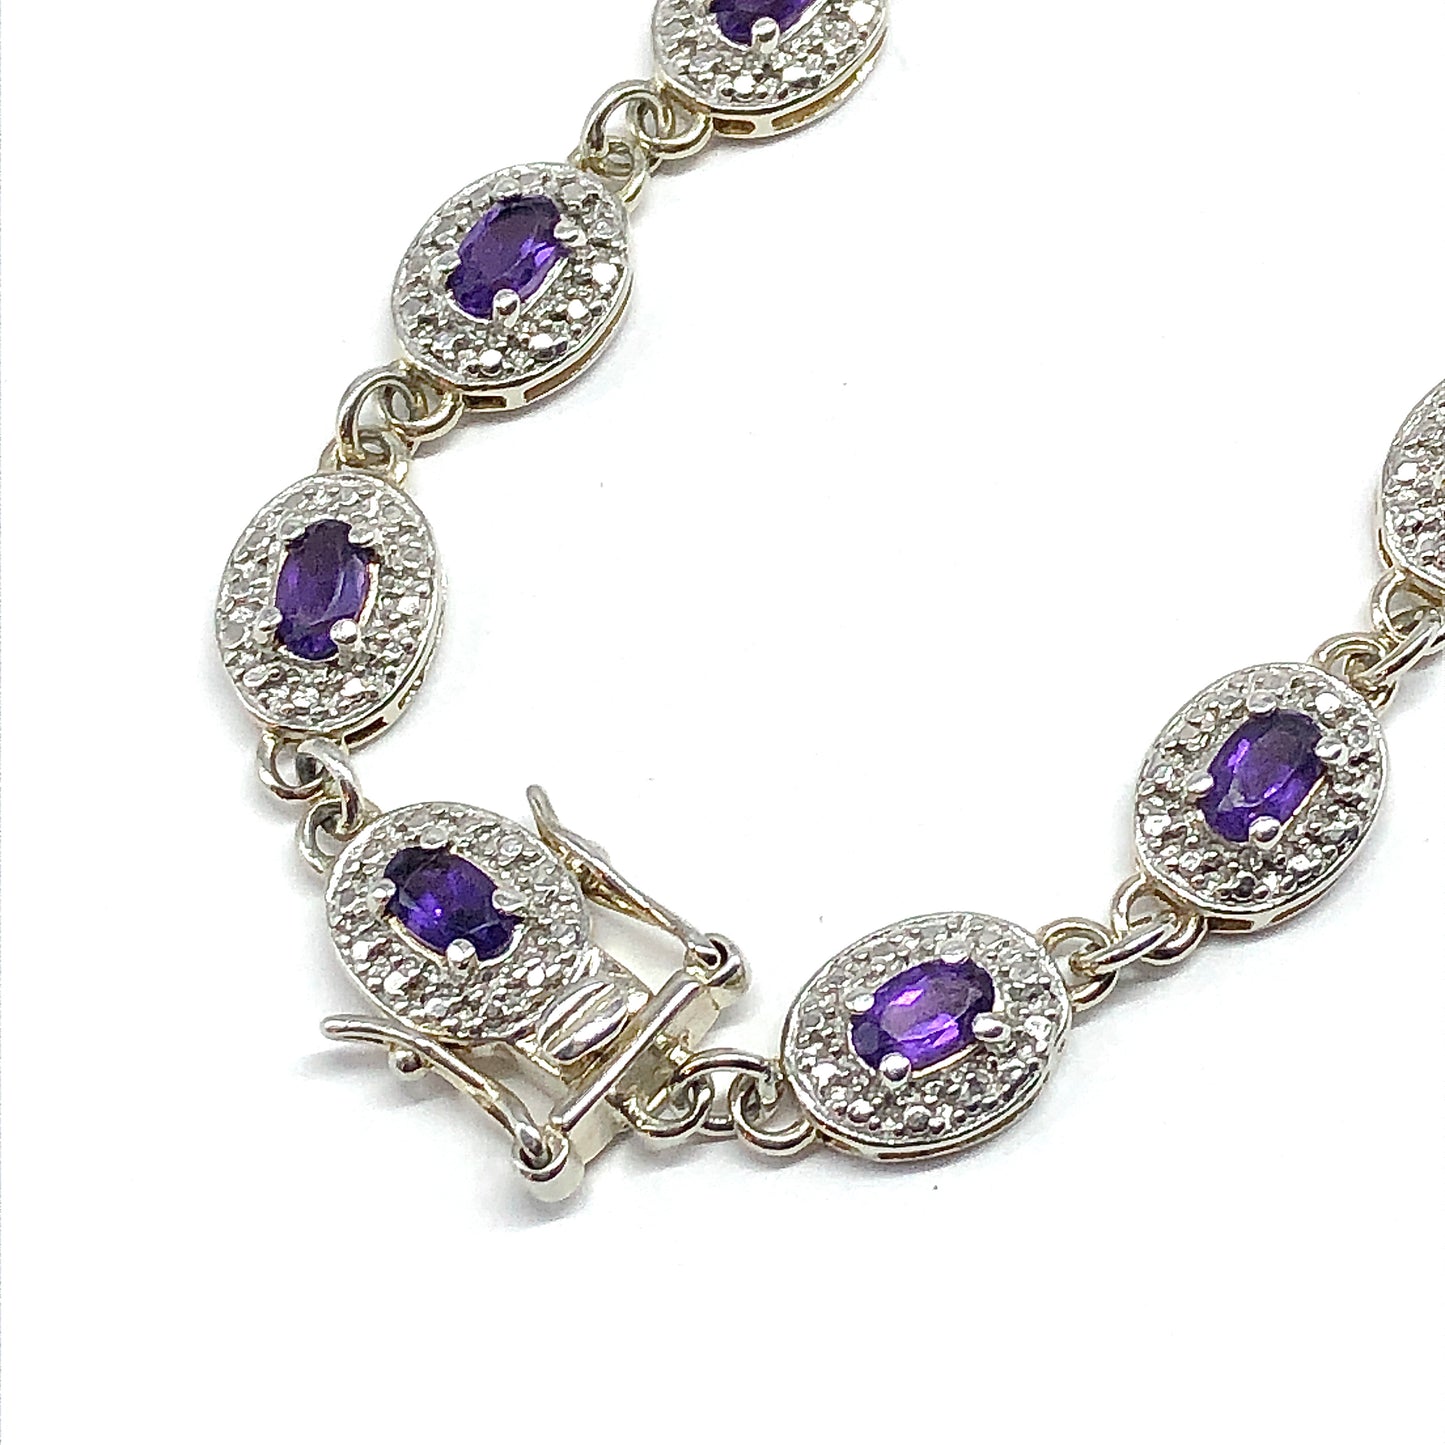 Bracelet - 925 Sterling Silver Purple Amethyst Gemstone Tennis Bracelet - 7.25in - Discount Estate Jewelry - Stacker Bracelet